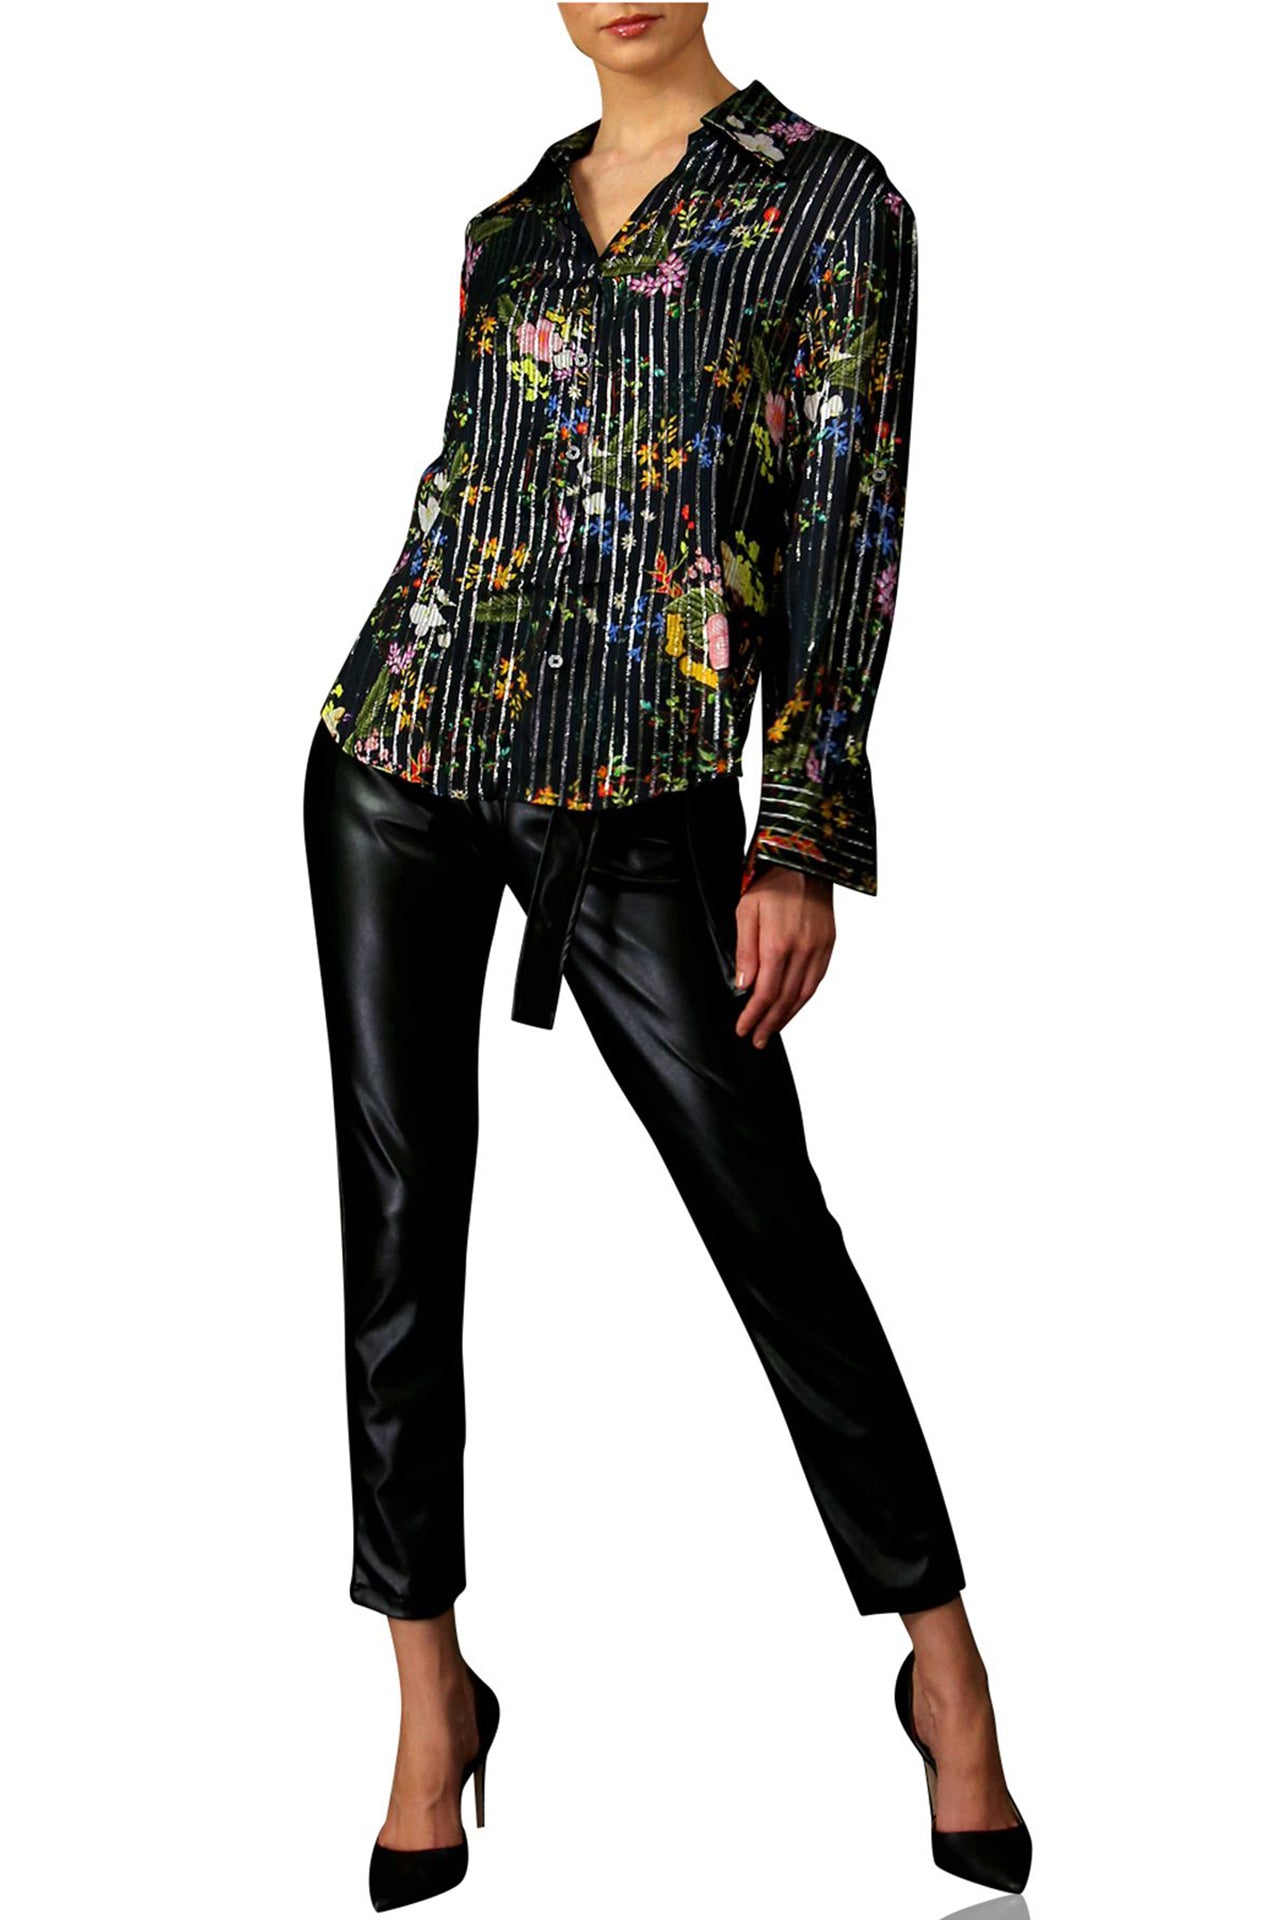 "bird print dress shirt" "floral button shirt womens" "Kyle X Shahida" "printed shirt for women"